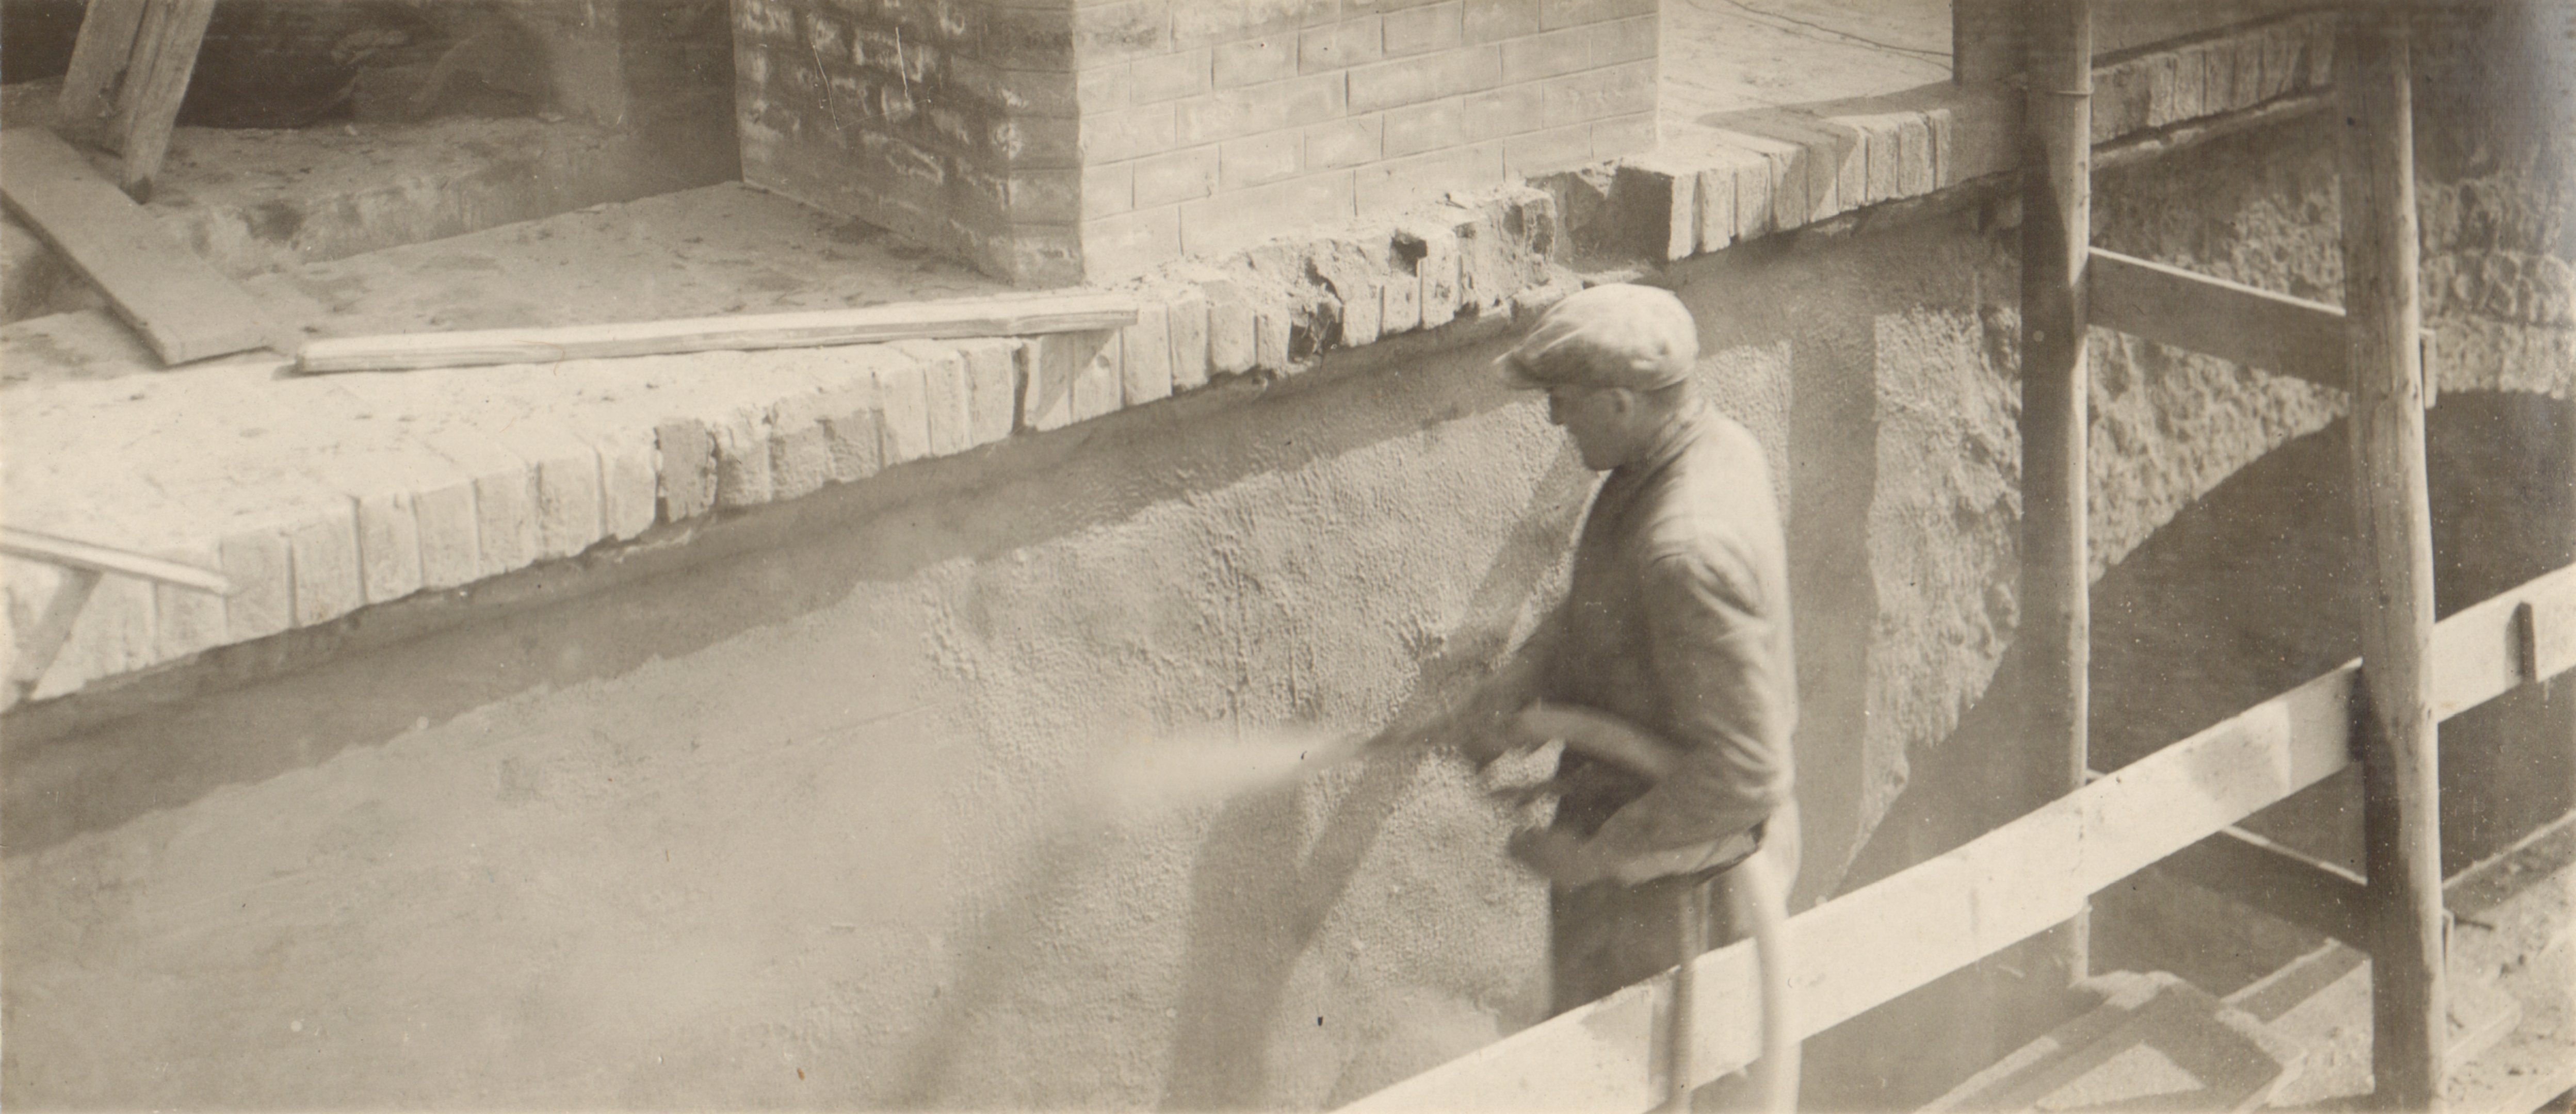 Részlet a munkából. Betonrálövelés, 1932. április 22. (Magyar Környezetvédelmi és Vízügyi Múzeum - Duna Múzeum CC BY-NC-SA)